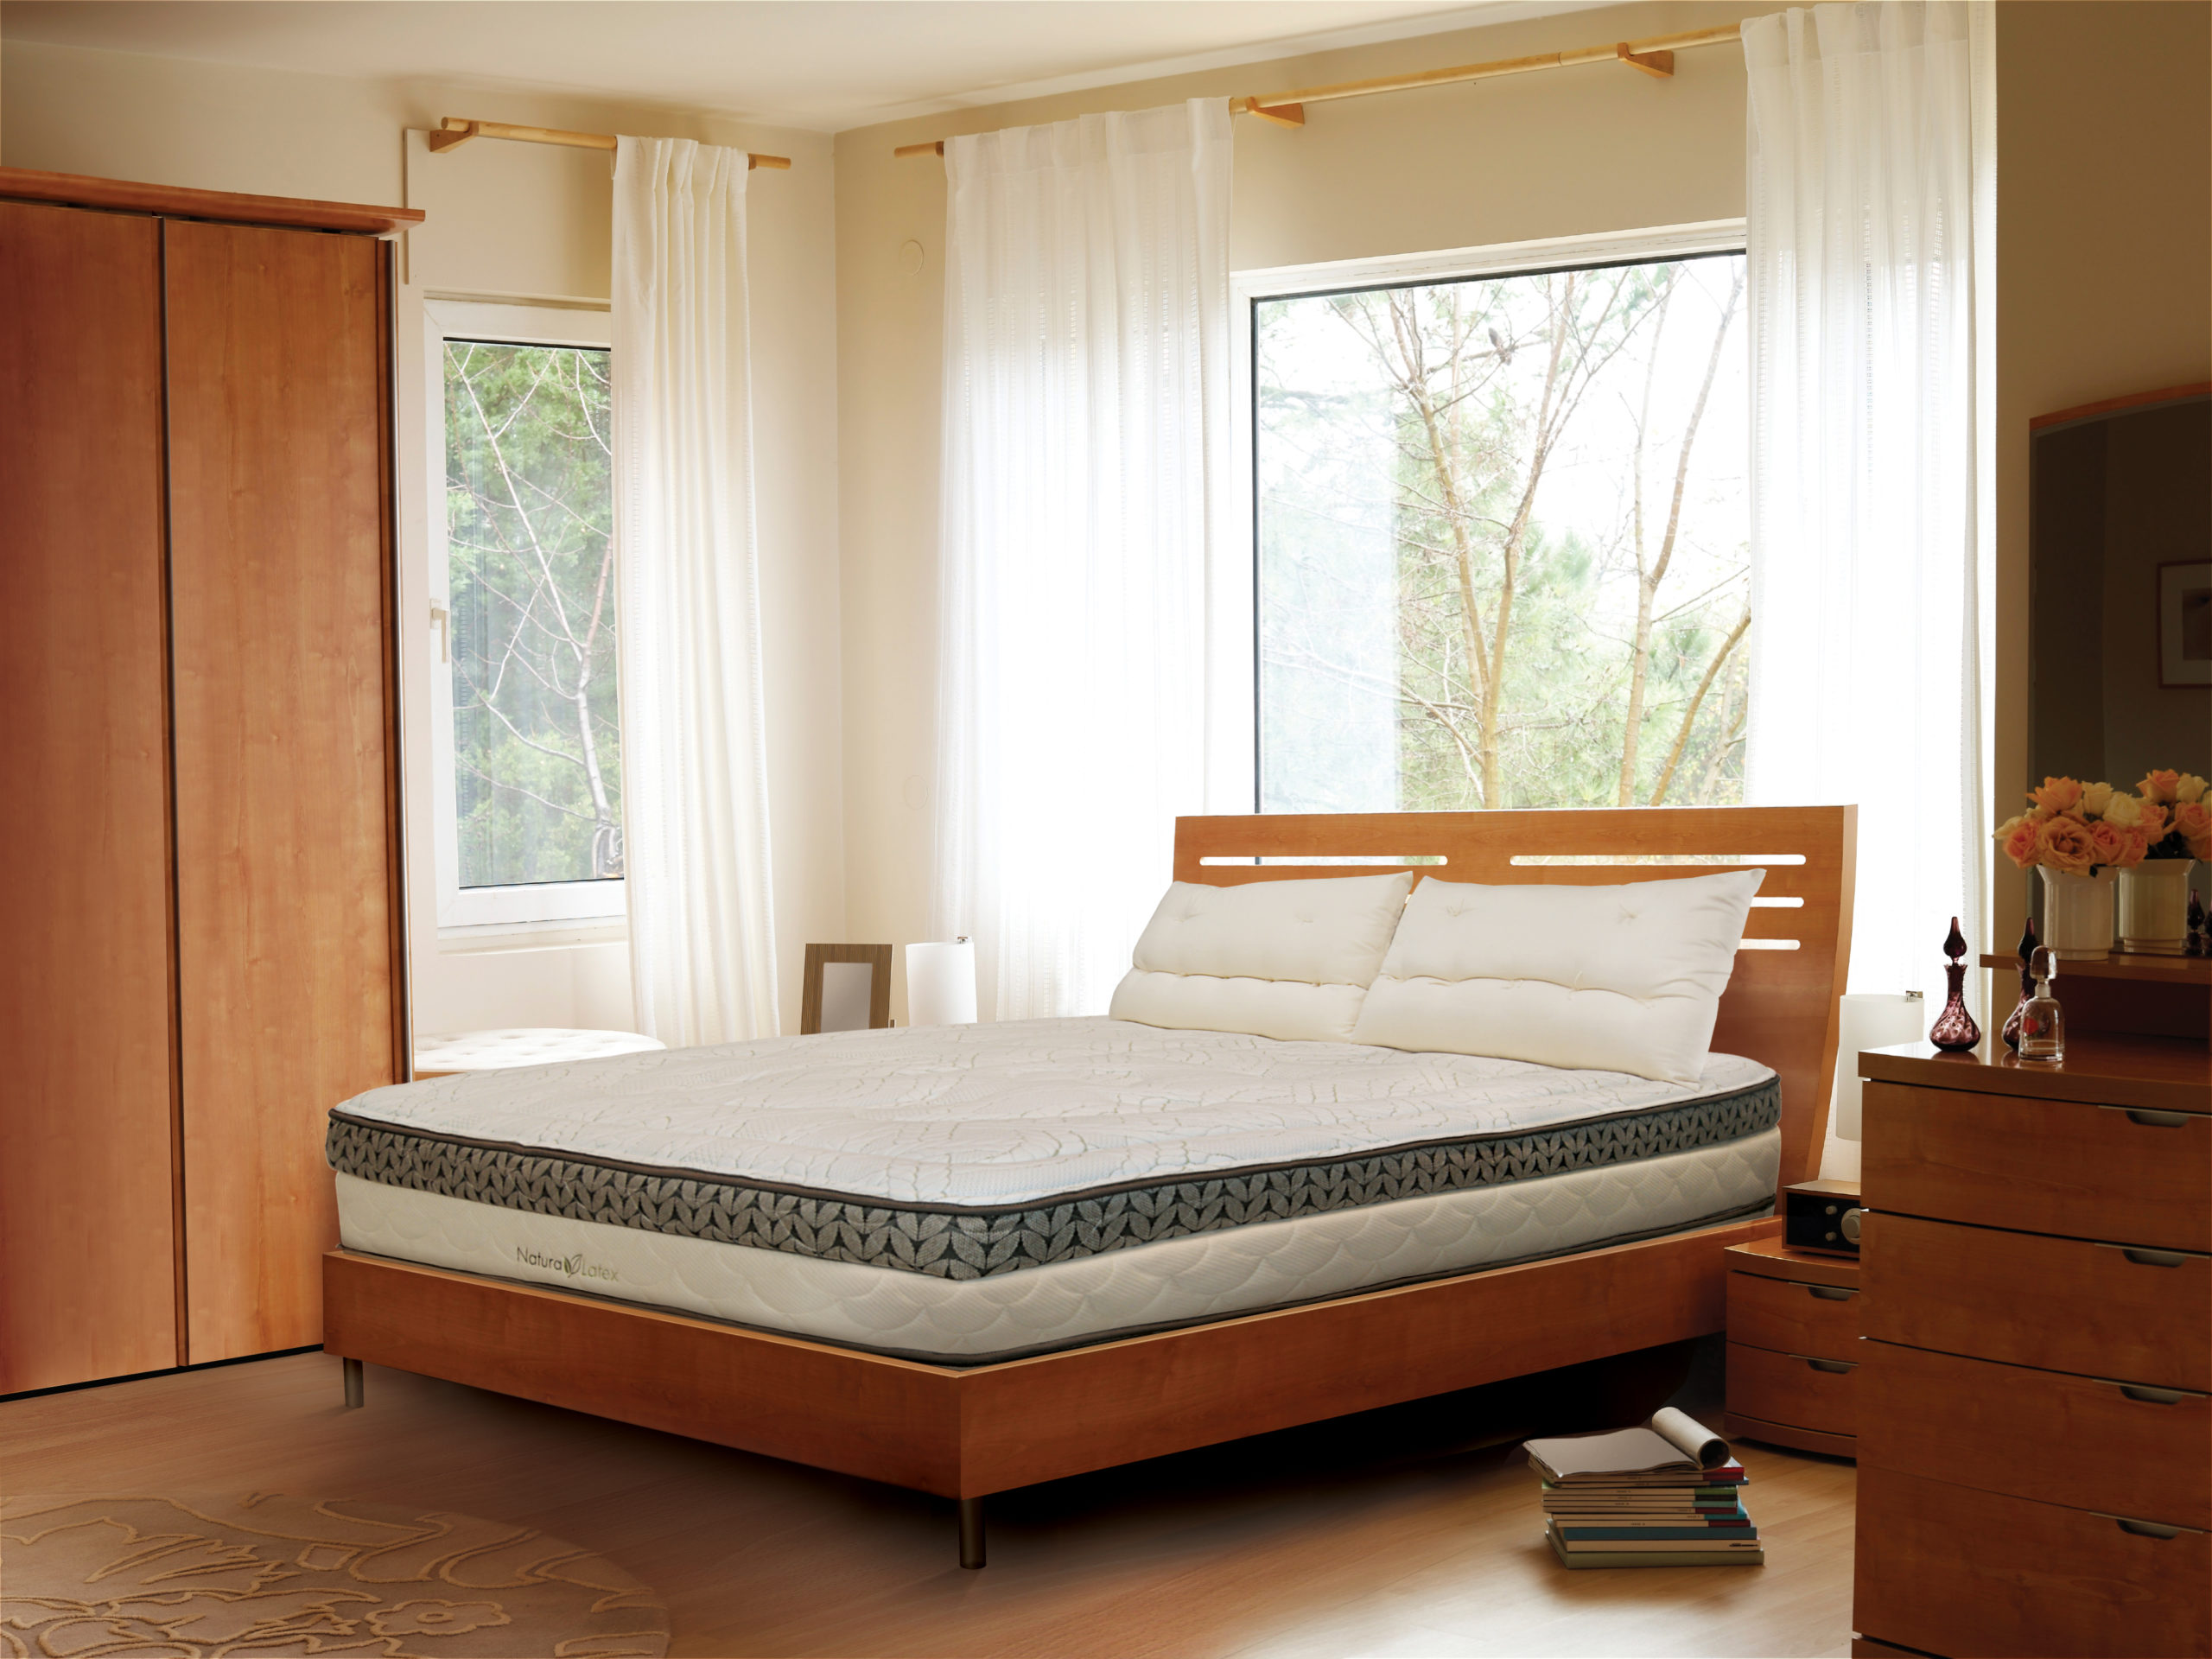 natura sleep mattress reviews